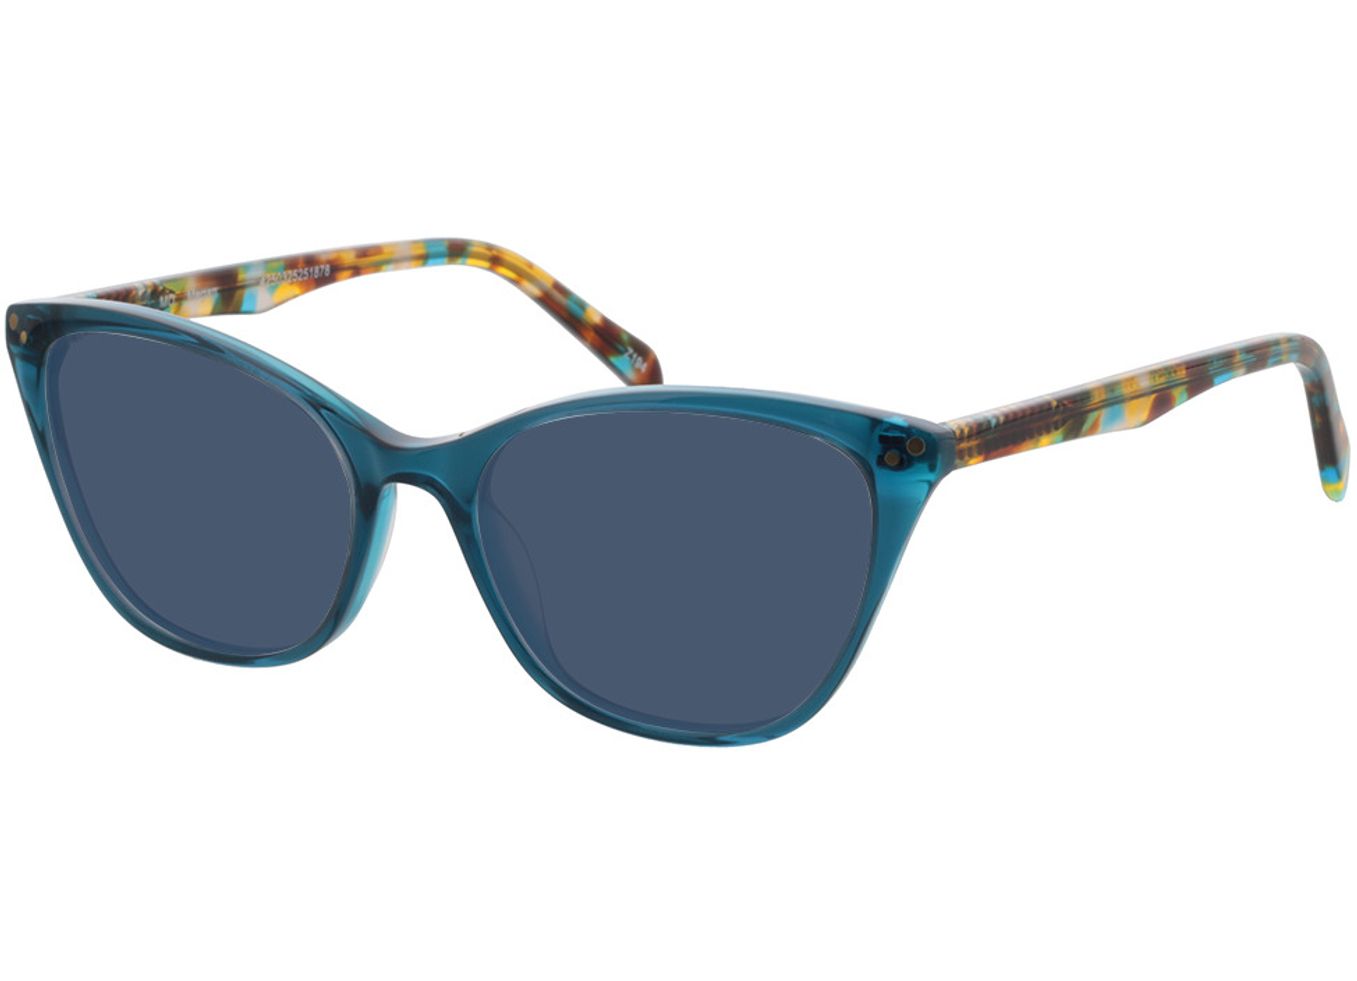 Megan - blau transparent/havanna Sonnenbrille mit Sehstärke, Vollrand, Cateye von Brille24 Collection